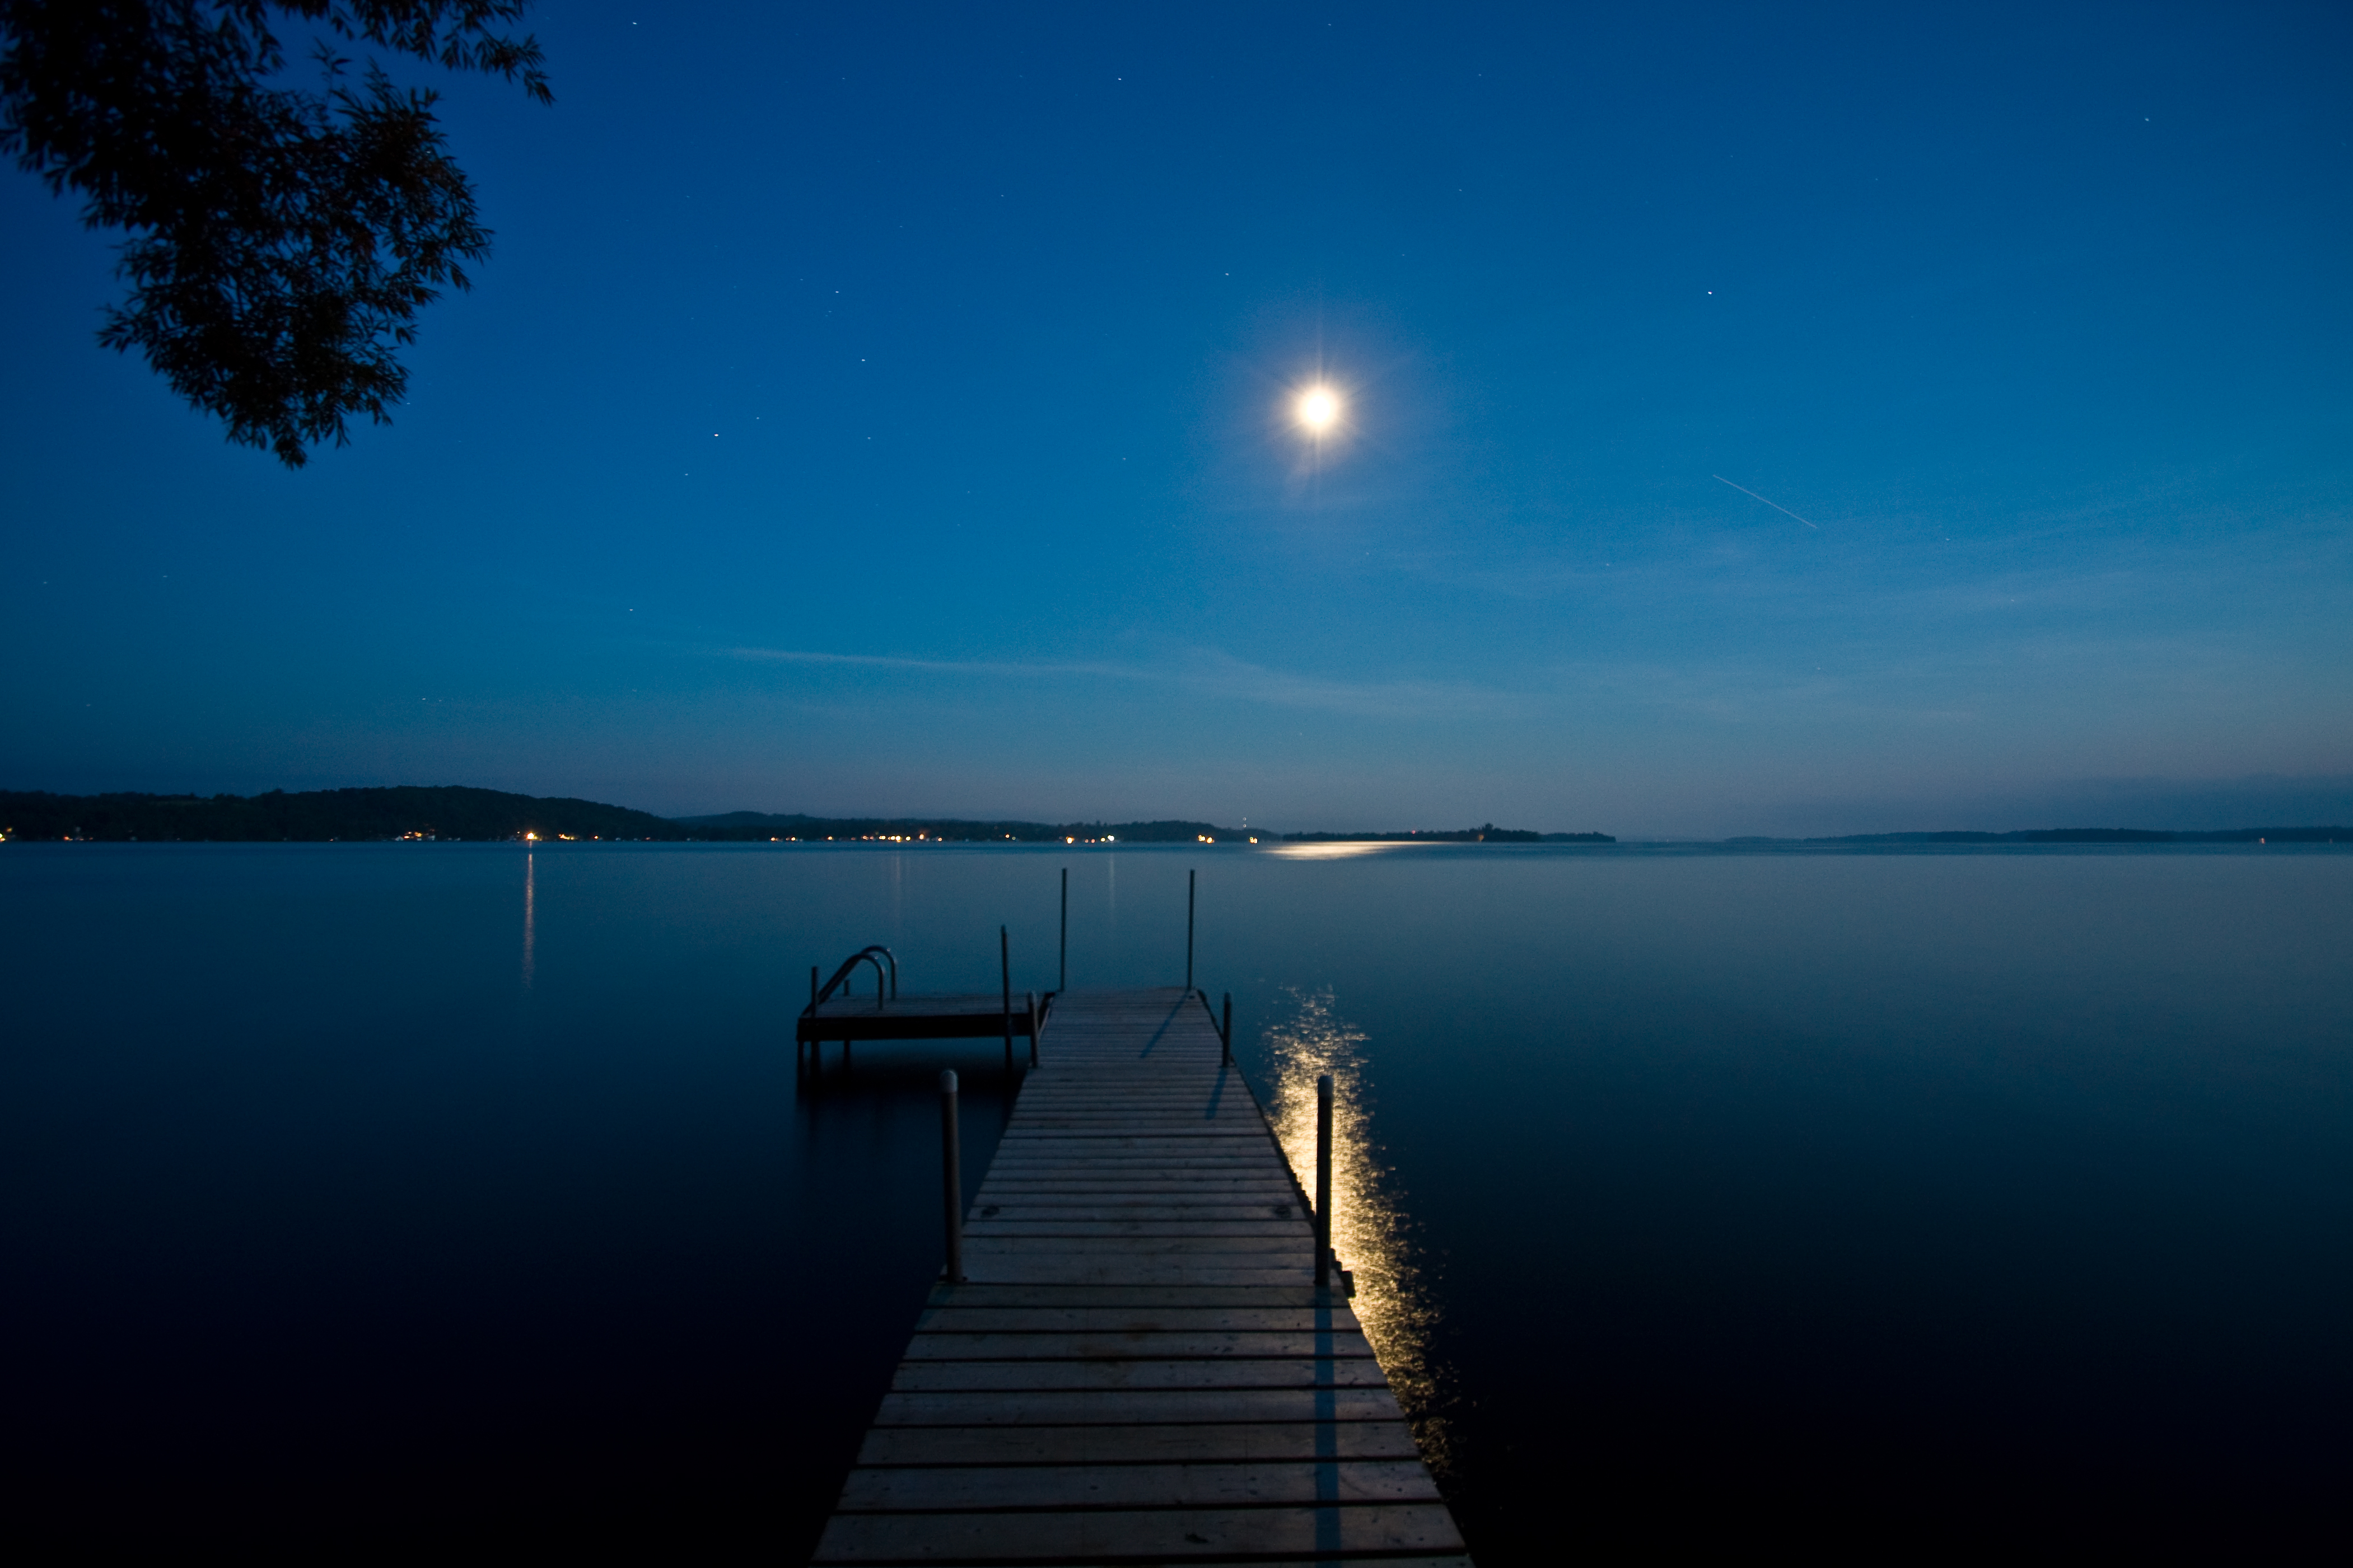 フリー画像 自然風景 湖の風景 青色 ブルー 月の風景 夜景 ドック 船渠 カナダ風景 ライス湖 カナダ画像素材なら 無料 フリー写真素材のフリー フォト